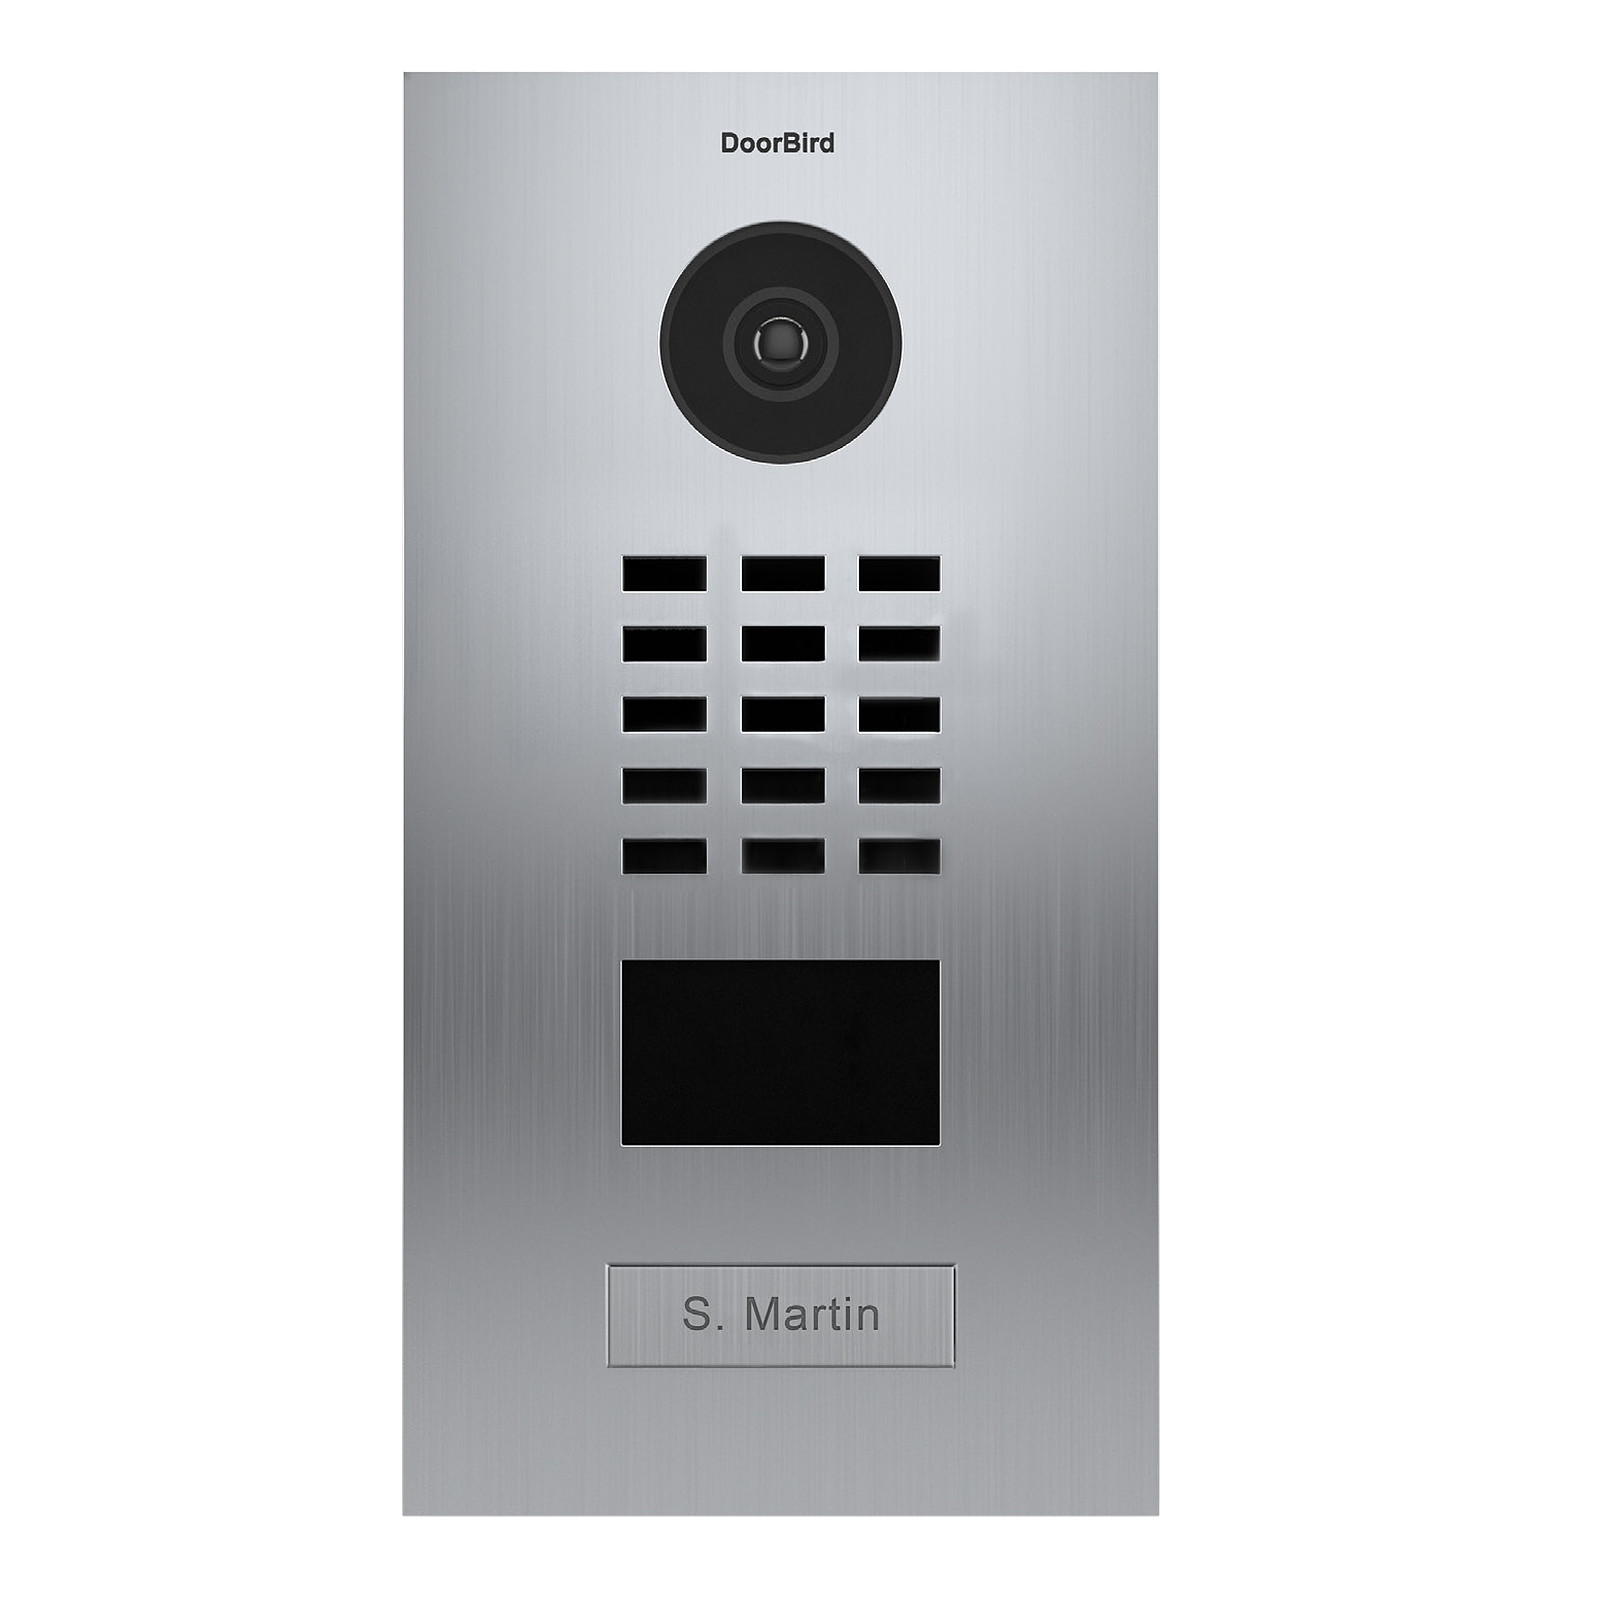 Portier video IP avec lecteur de badge RFID - Doorbird D2101V Inox - Interphone connecte DoorBird